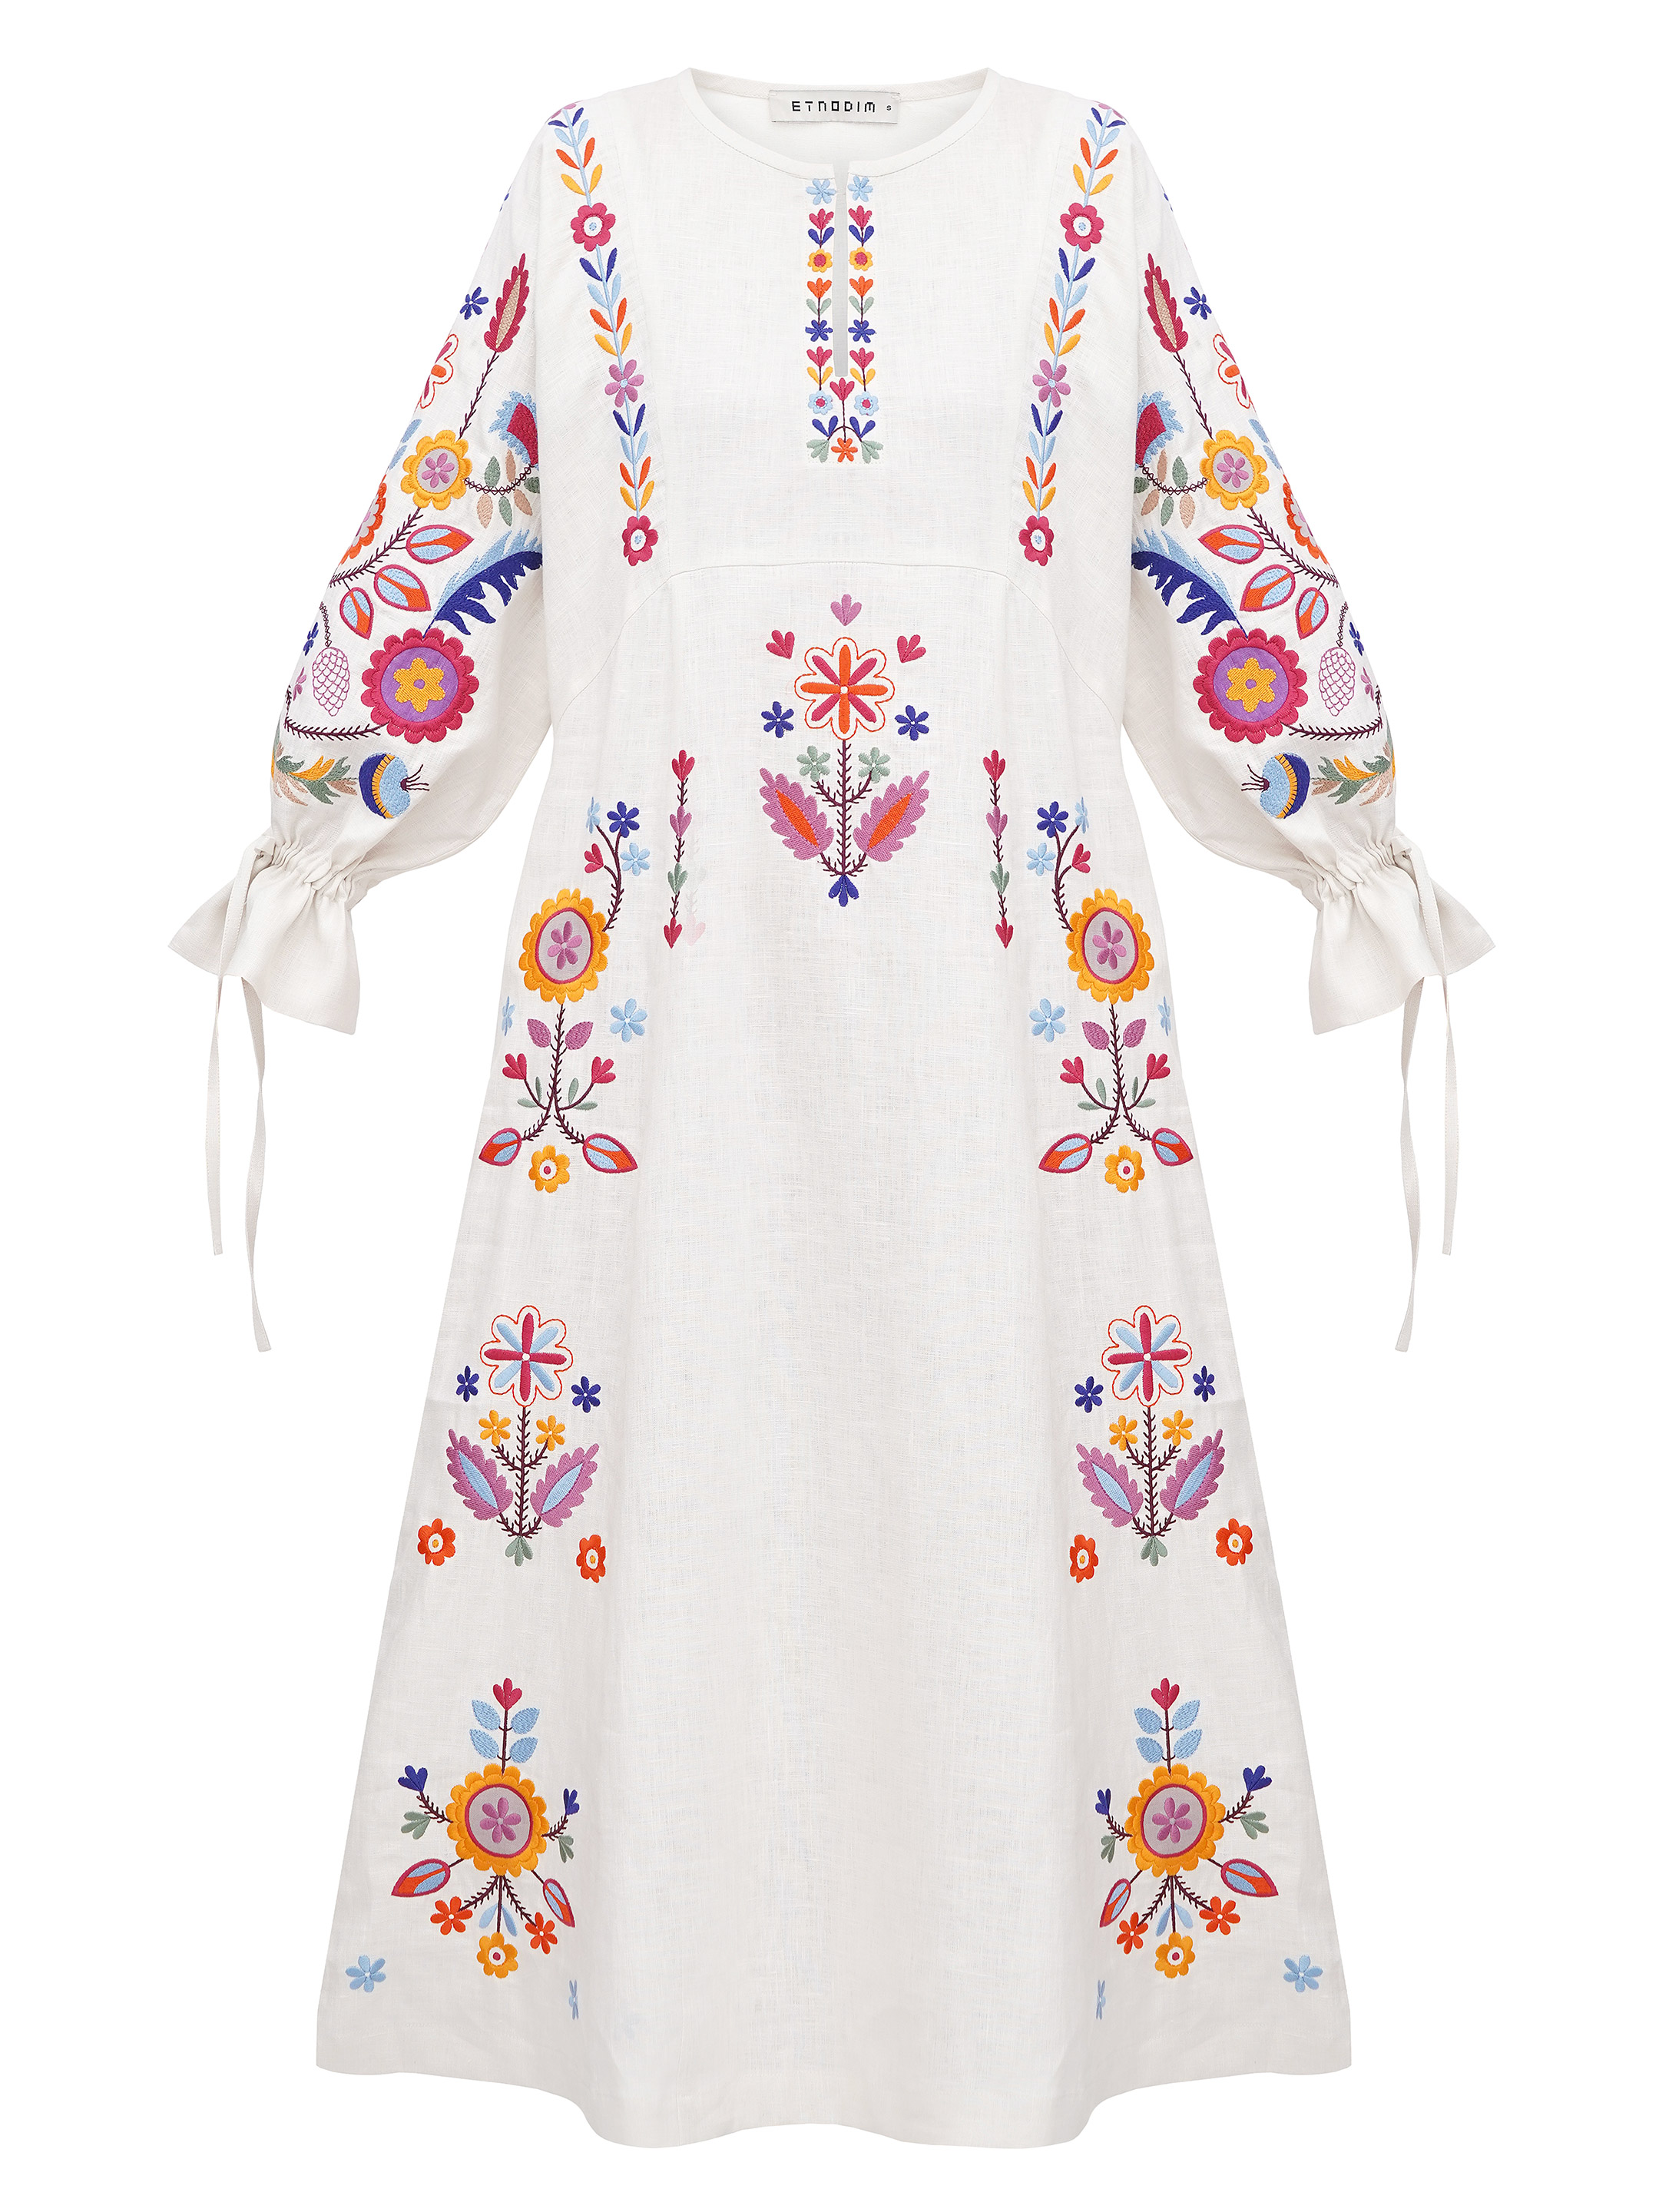 J Jill Love Linen 100% Linen White Embroidered Dress Size XS